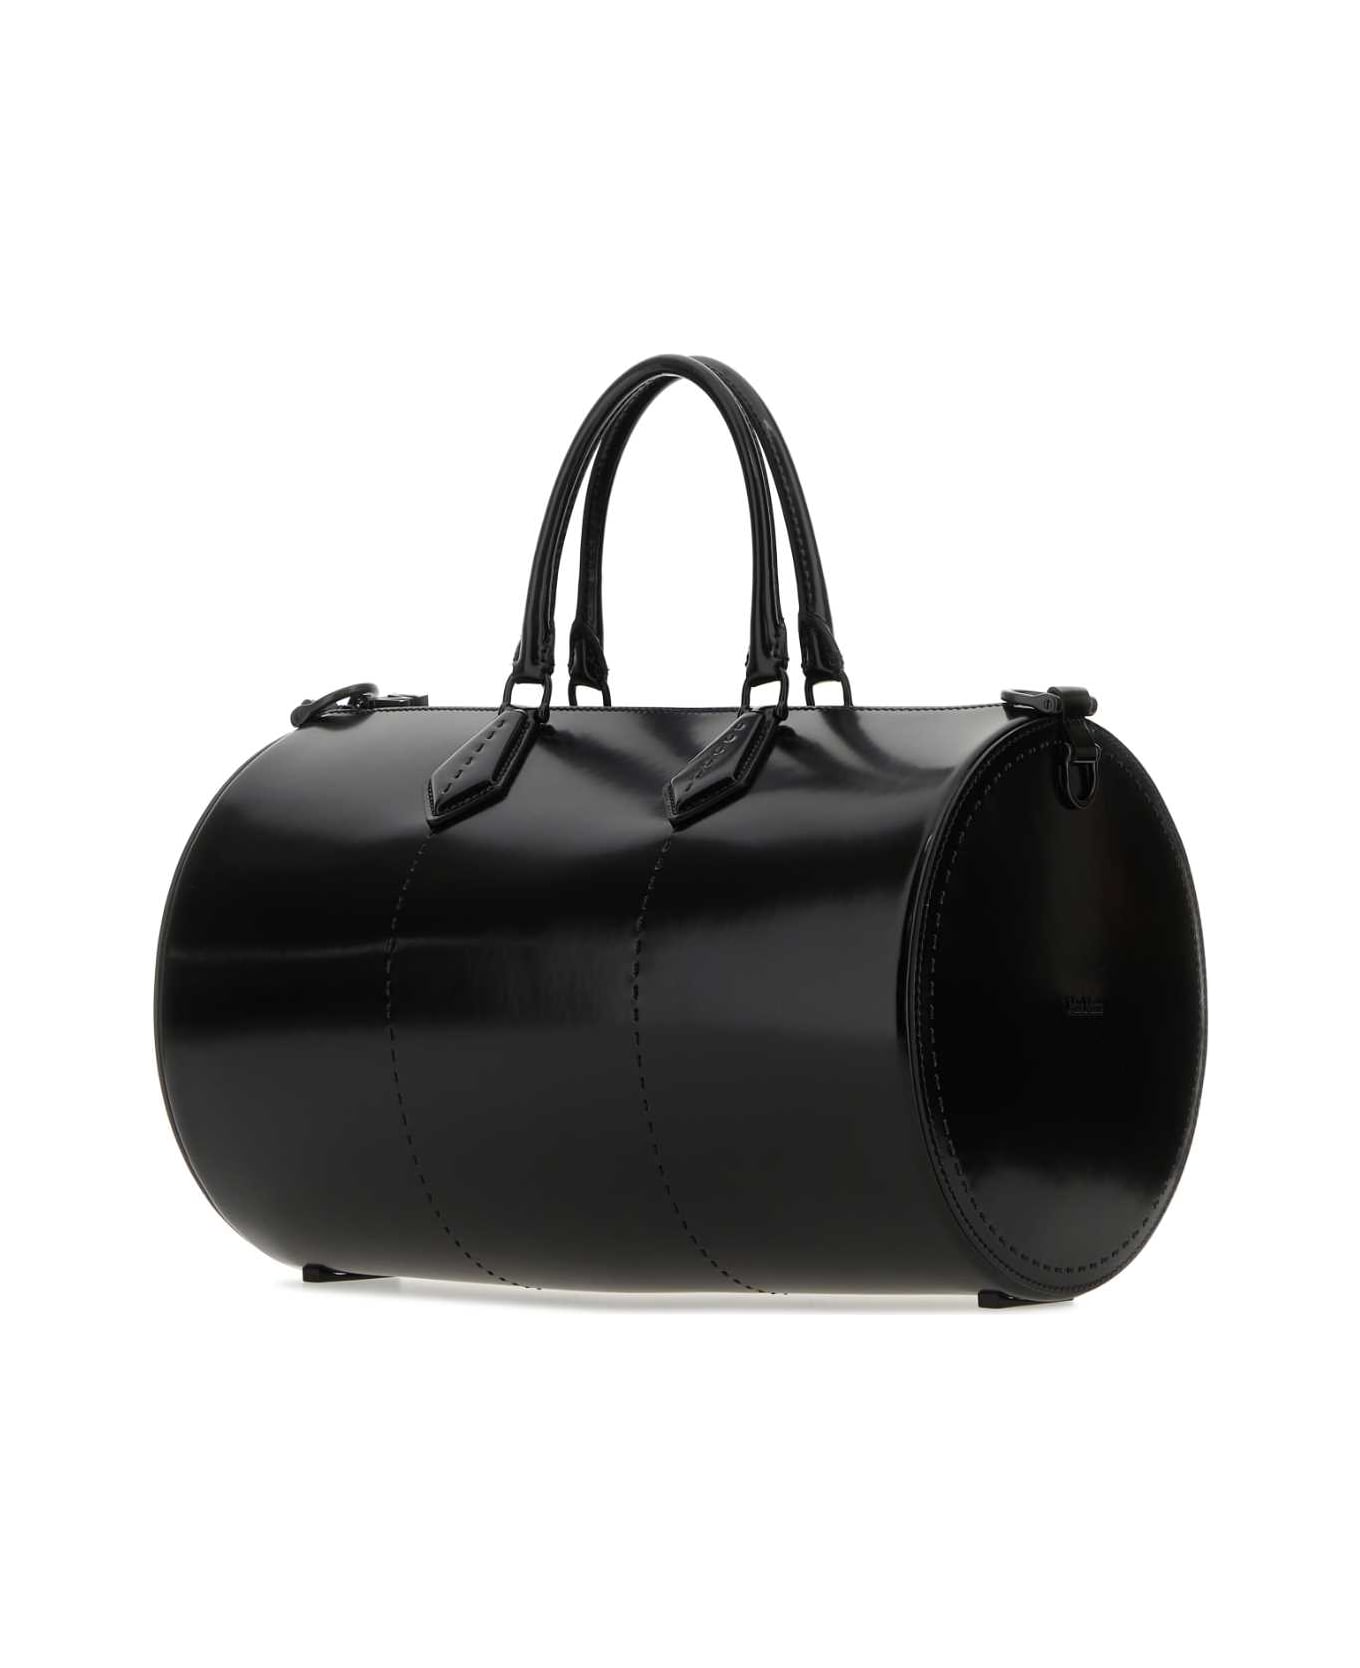 Max Mara Black Leather Brushedrolll Handbag - NERO